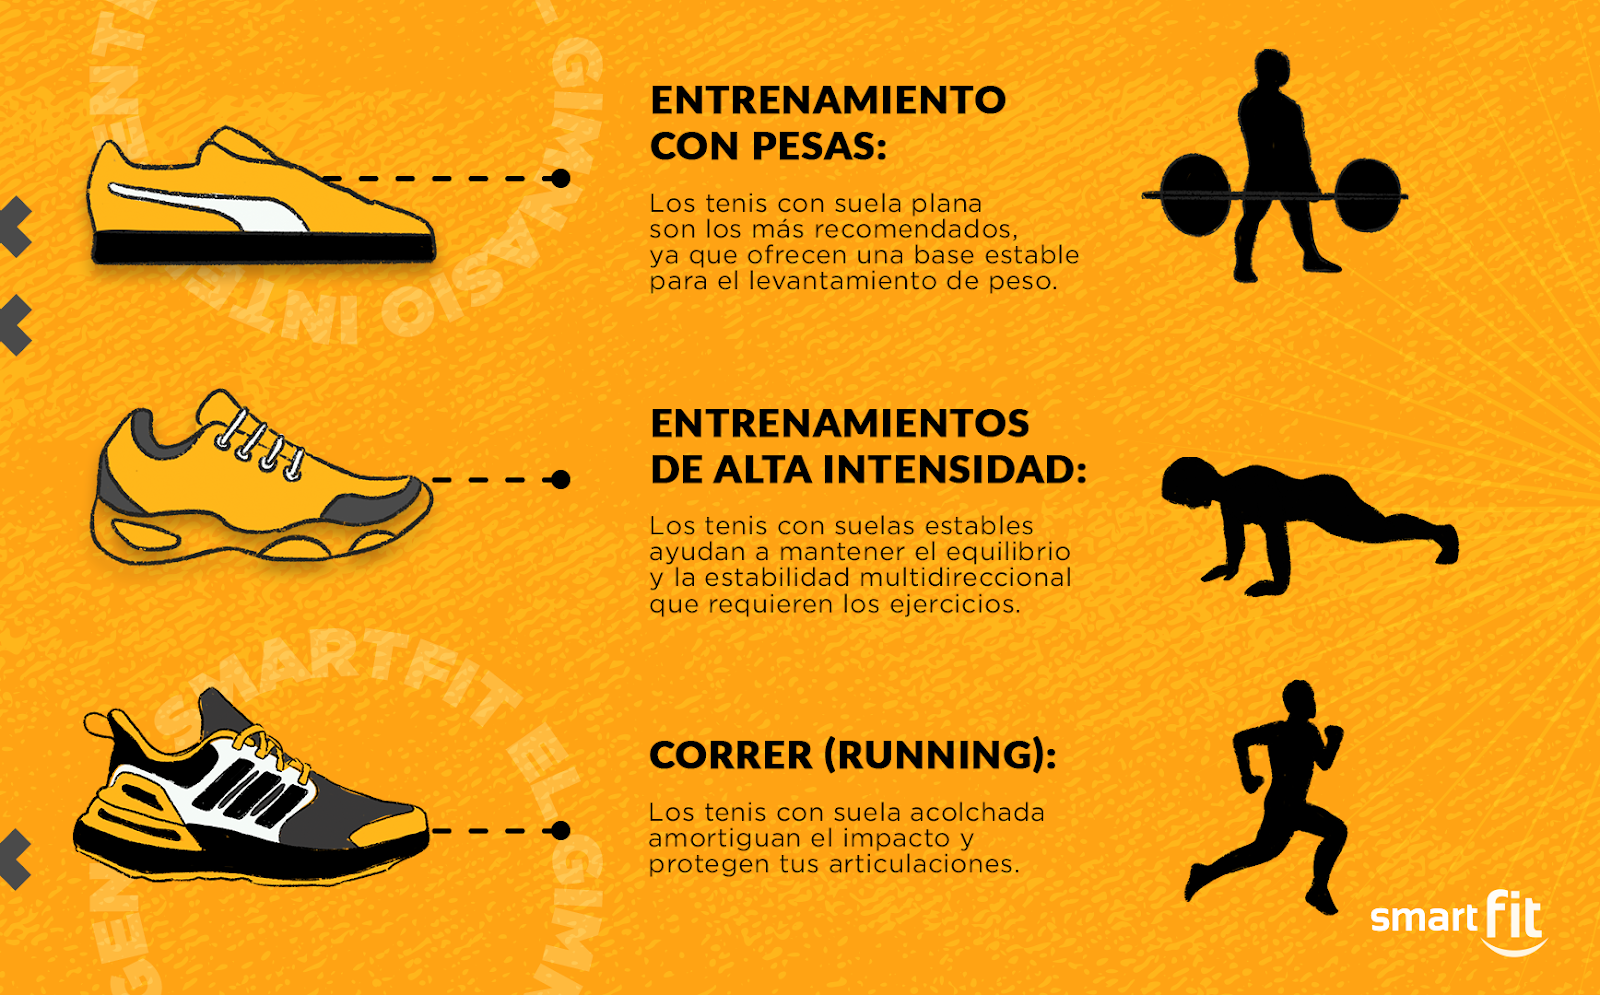 ilustración de las caracteristicas de los tenis adecuados para cada entrenamiento: pesas, alta intensidad y correr.